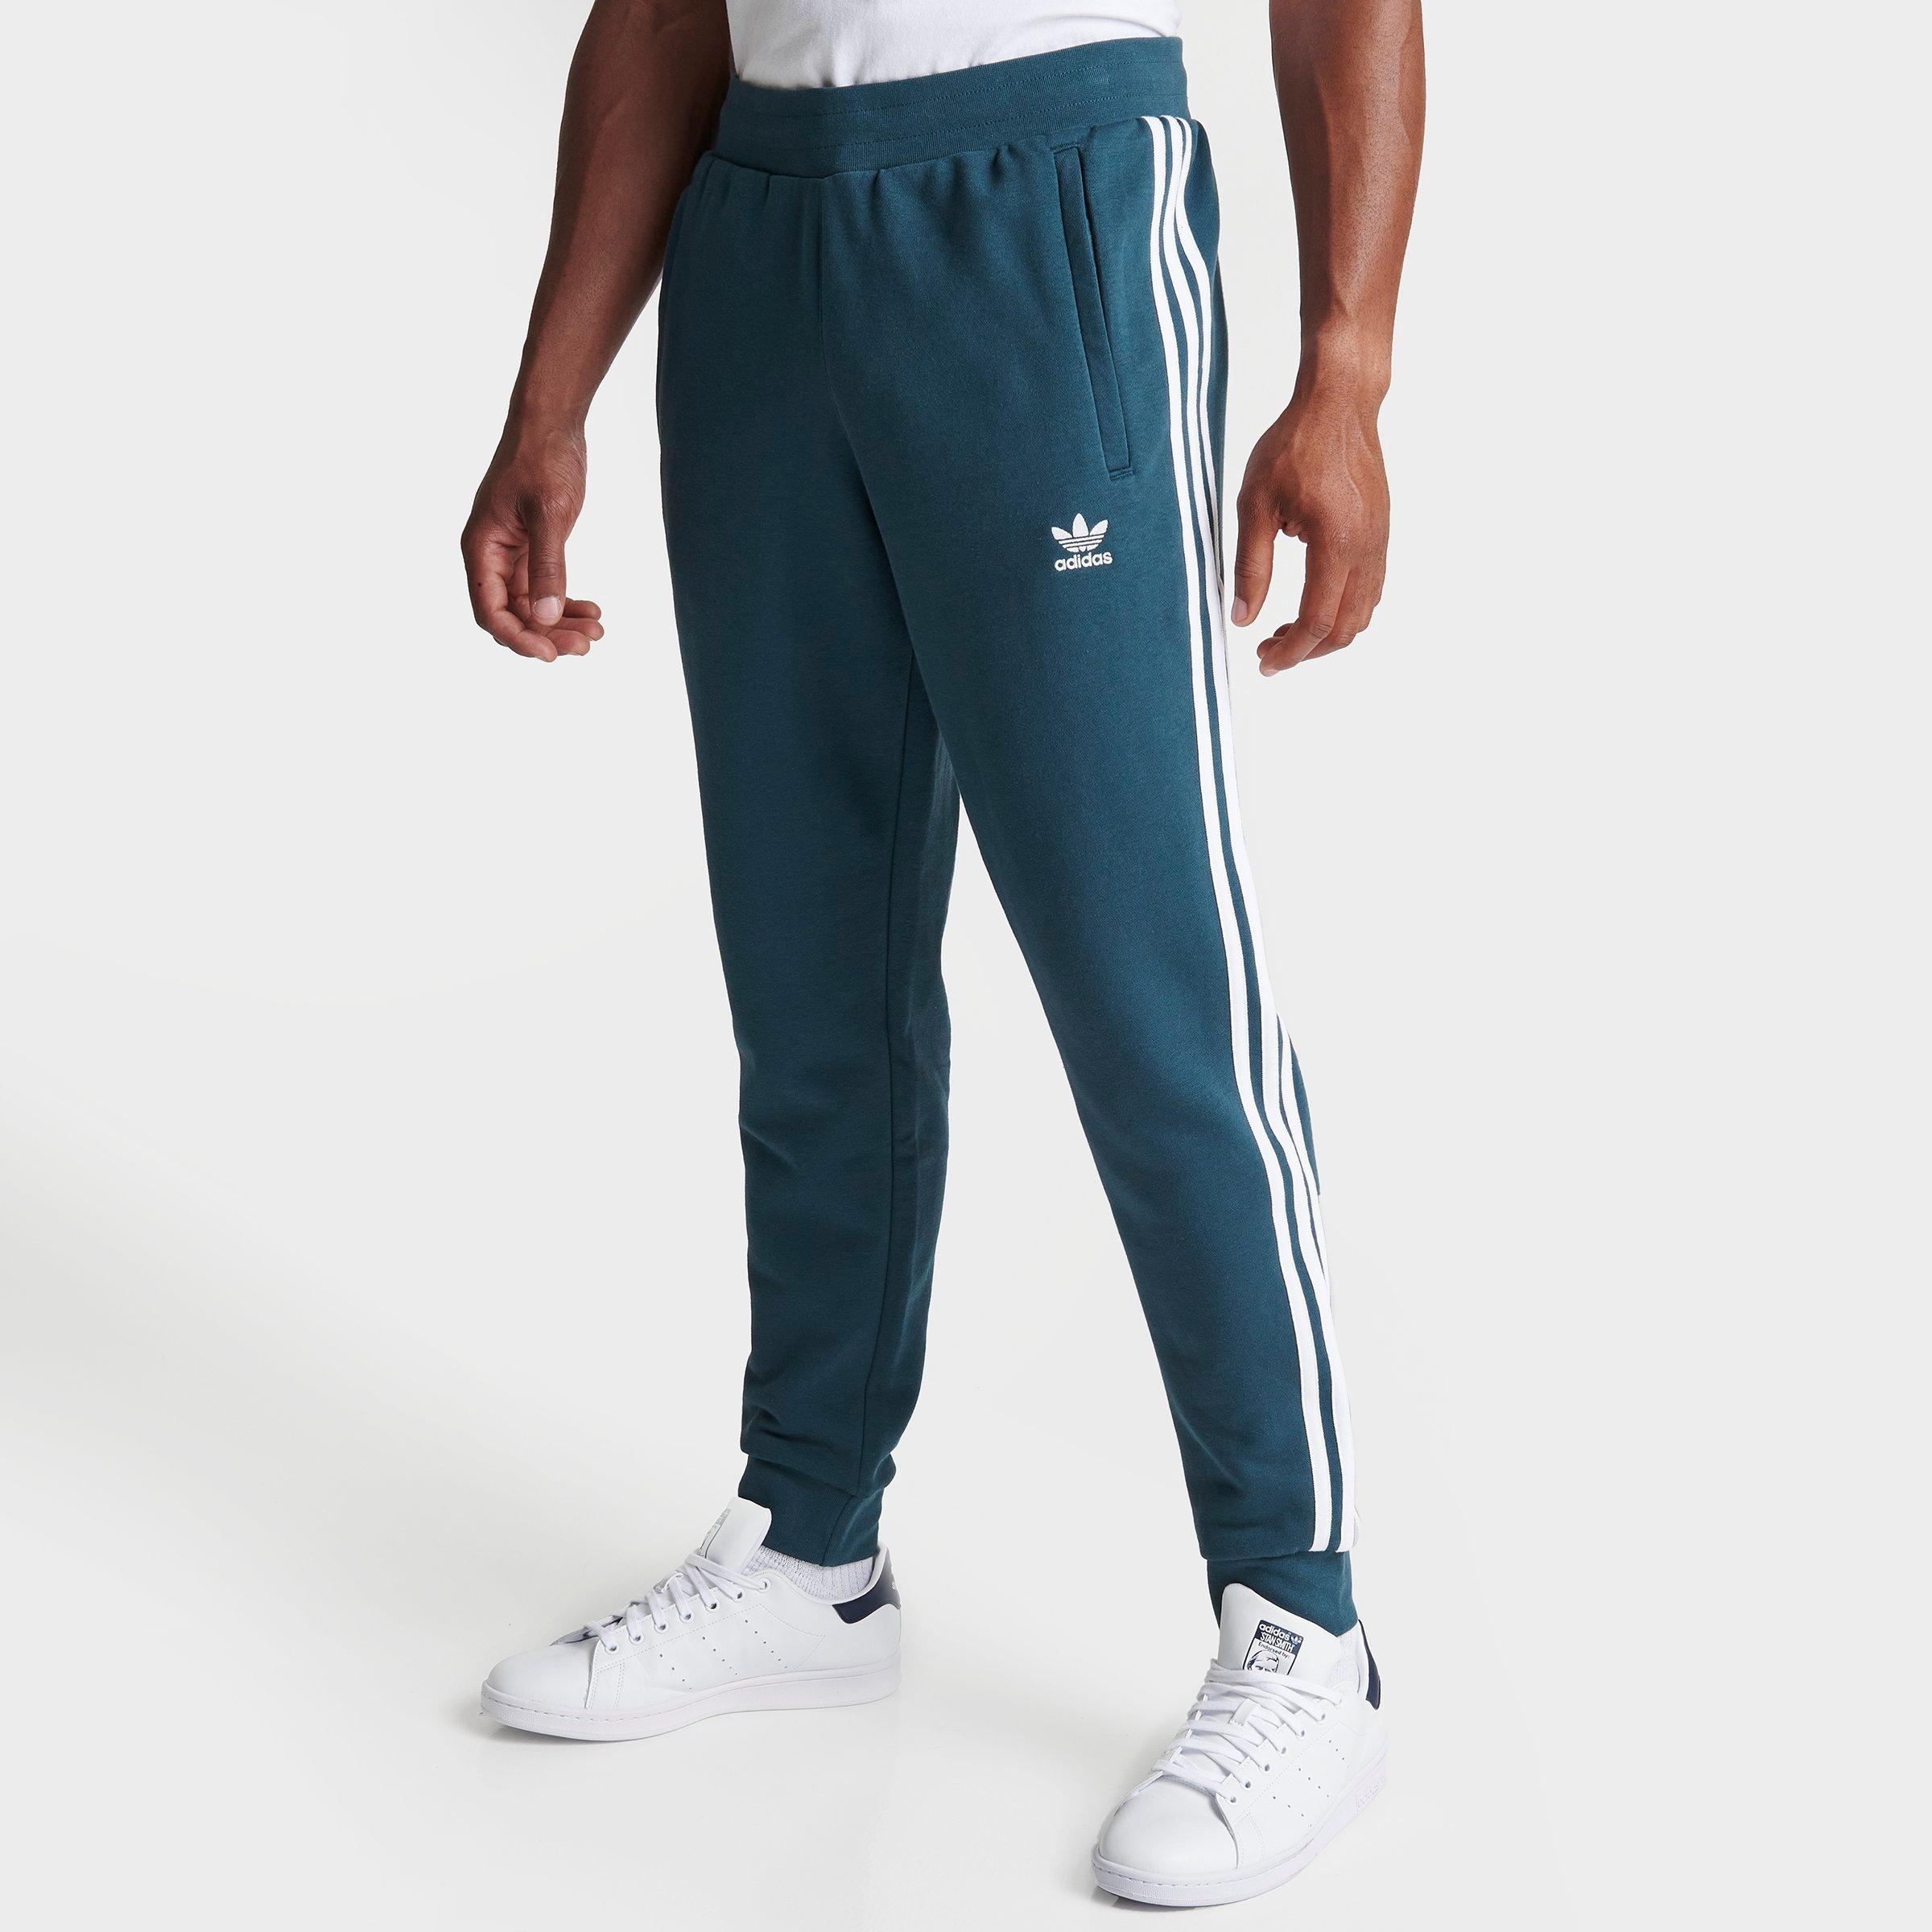 Adidas Originals Adidas Men's Originals Adicolor Classics 3-stripes Pants In Arctic Night